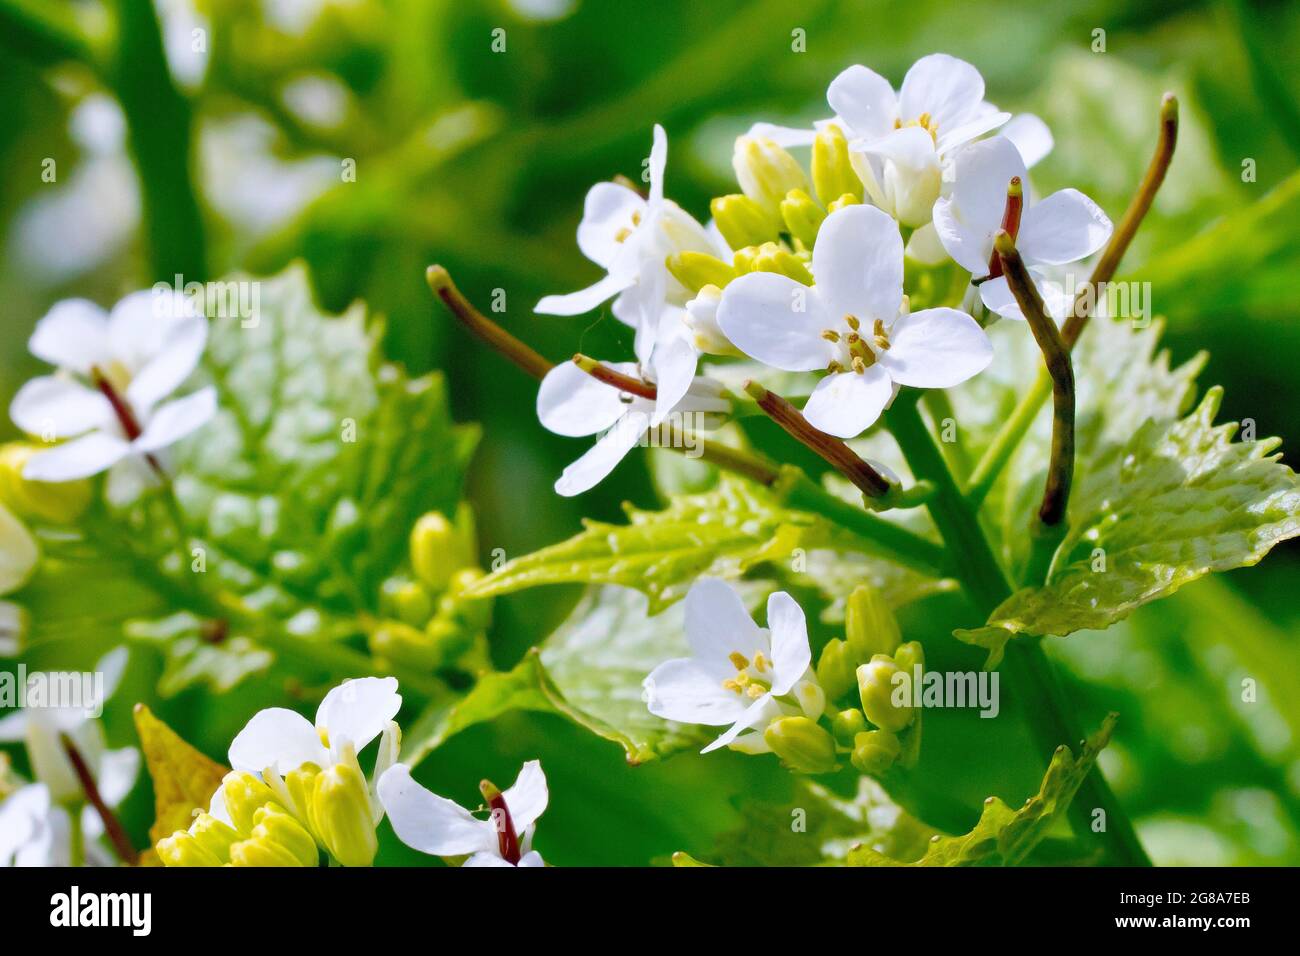 Mostaza de ajo (alliaria petiolata), también conocida como Jack by the Hedge, muestra de cerca las pequeñas flores blancas y las vainas en desarrollo. Foto de stock